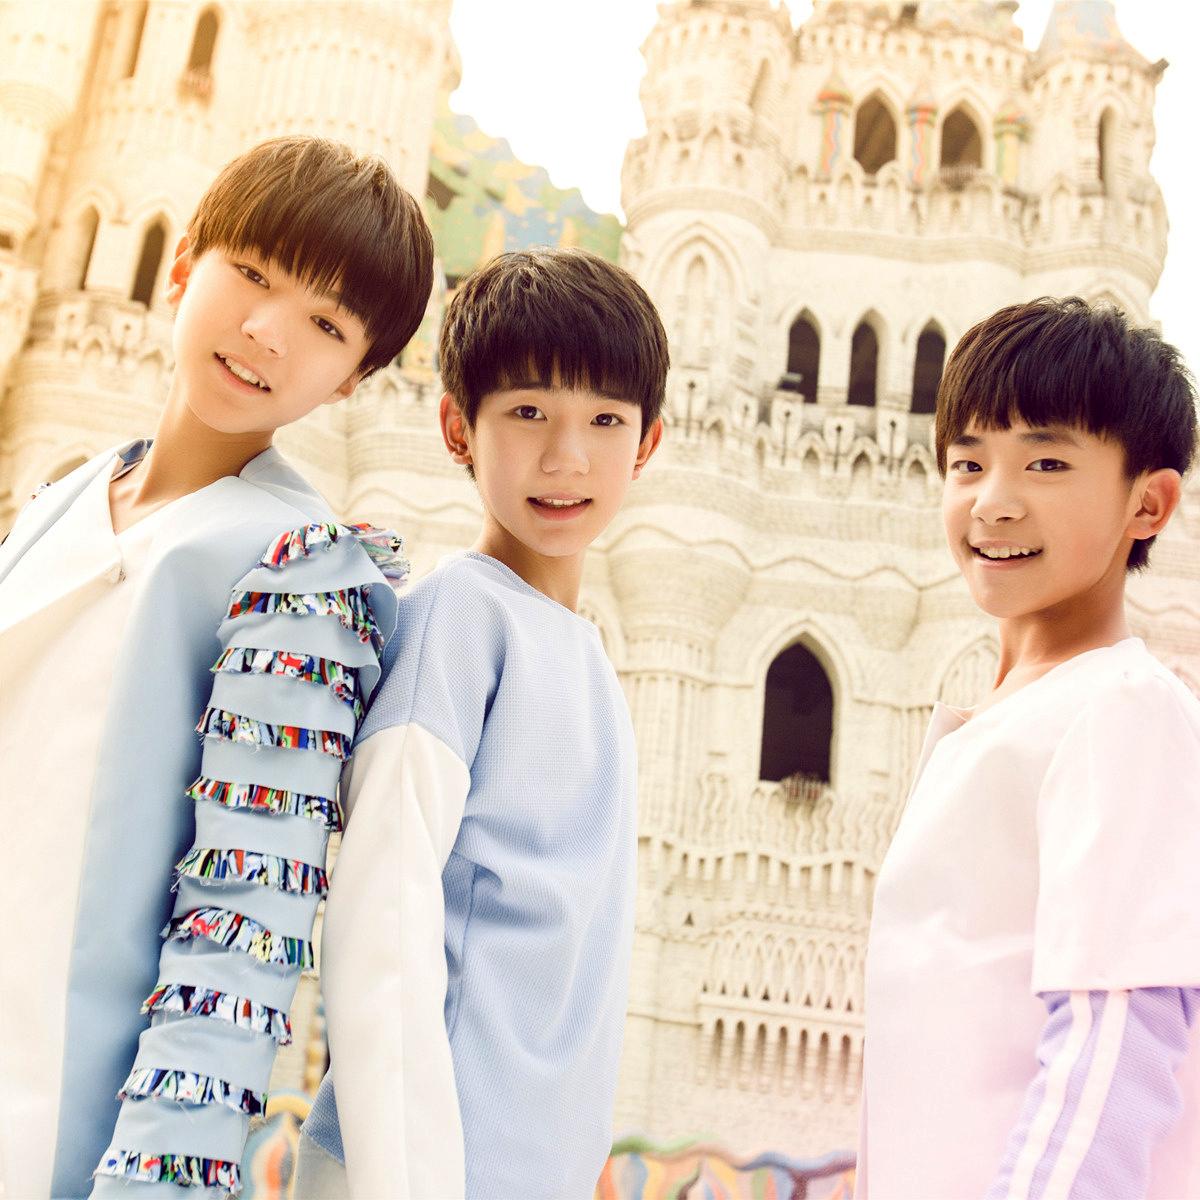 少年偶像 男子中学生3人組ユニット Tf Boys が中国で大人気 華流 チャイナ日和 又名 華流的一天